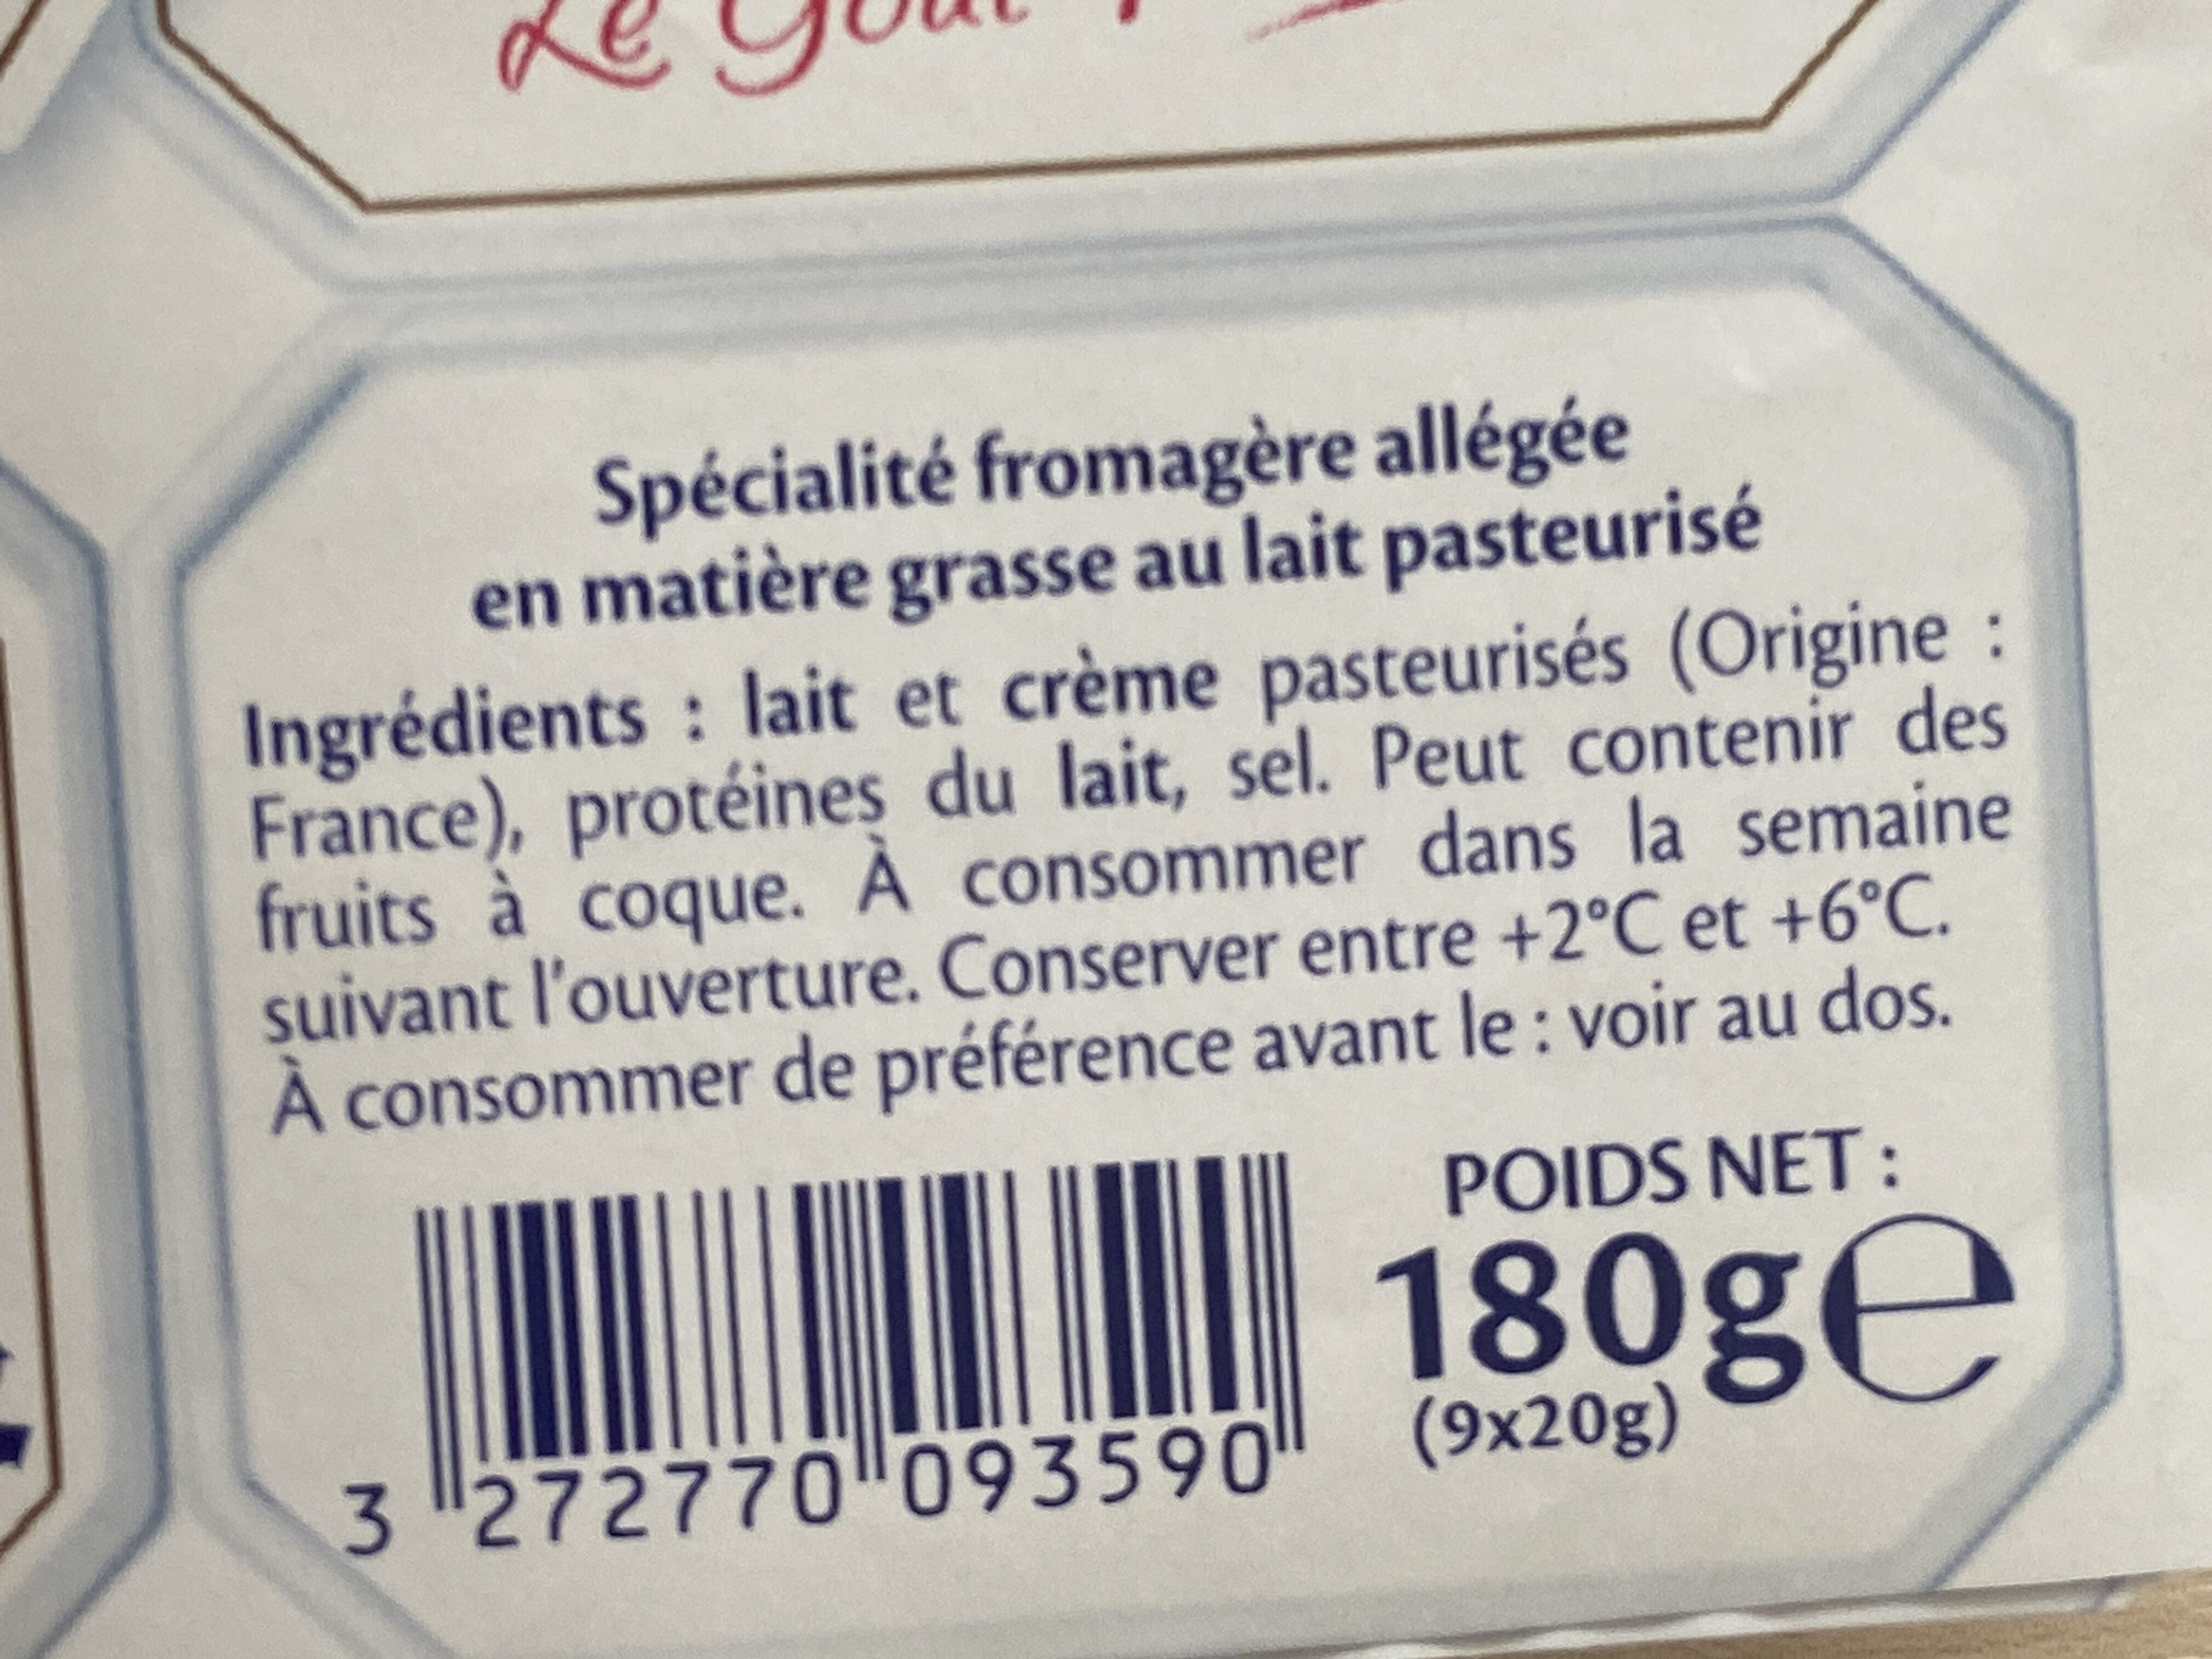 St Moret Ligne & Plaisir 8%  Minis - Ingredients - fr